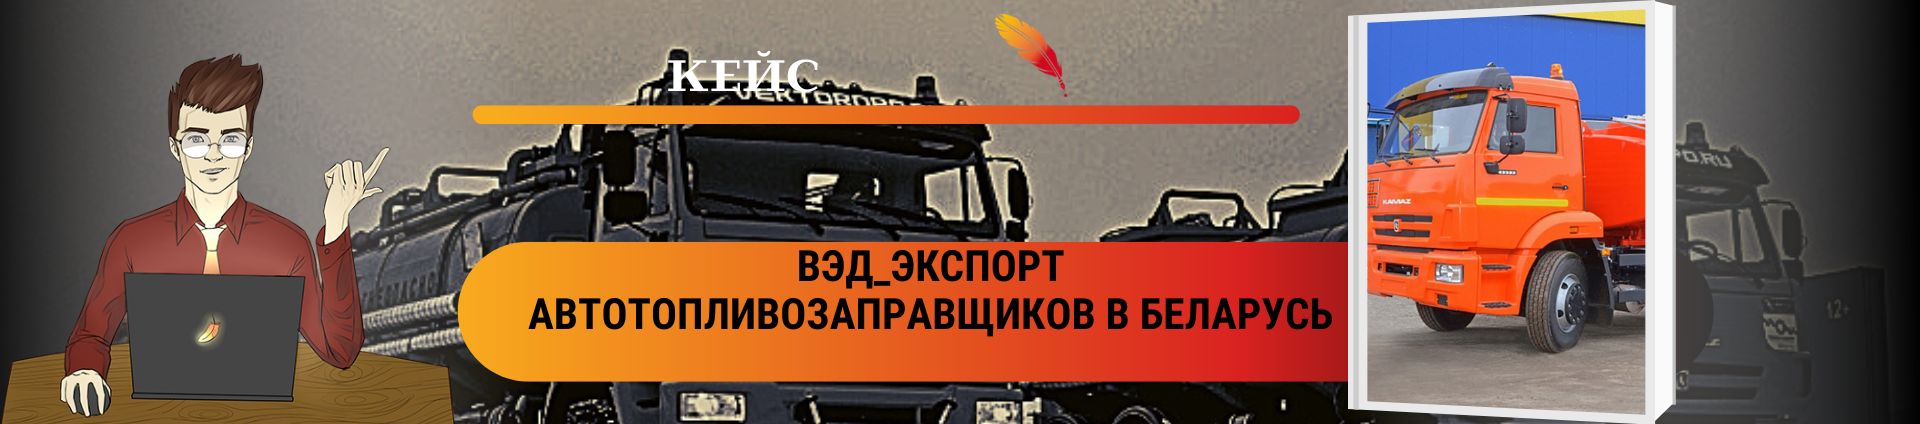 ВЭД_Экспорт автотопливозаправщиков в Беларусь